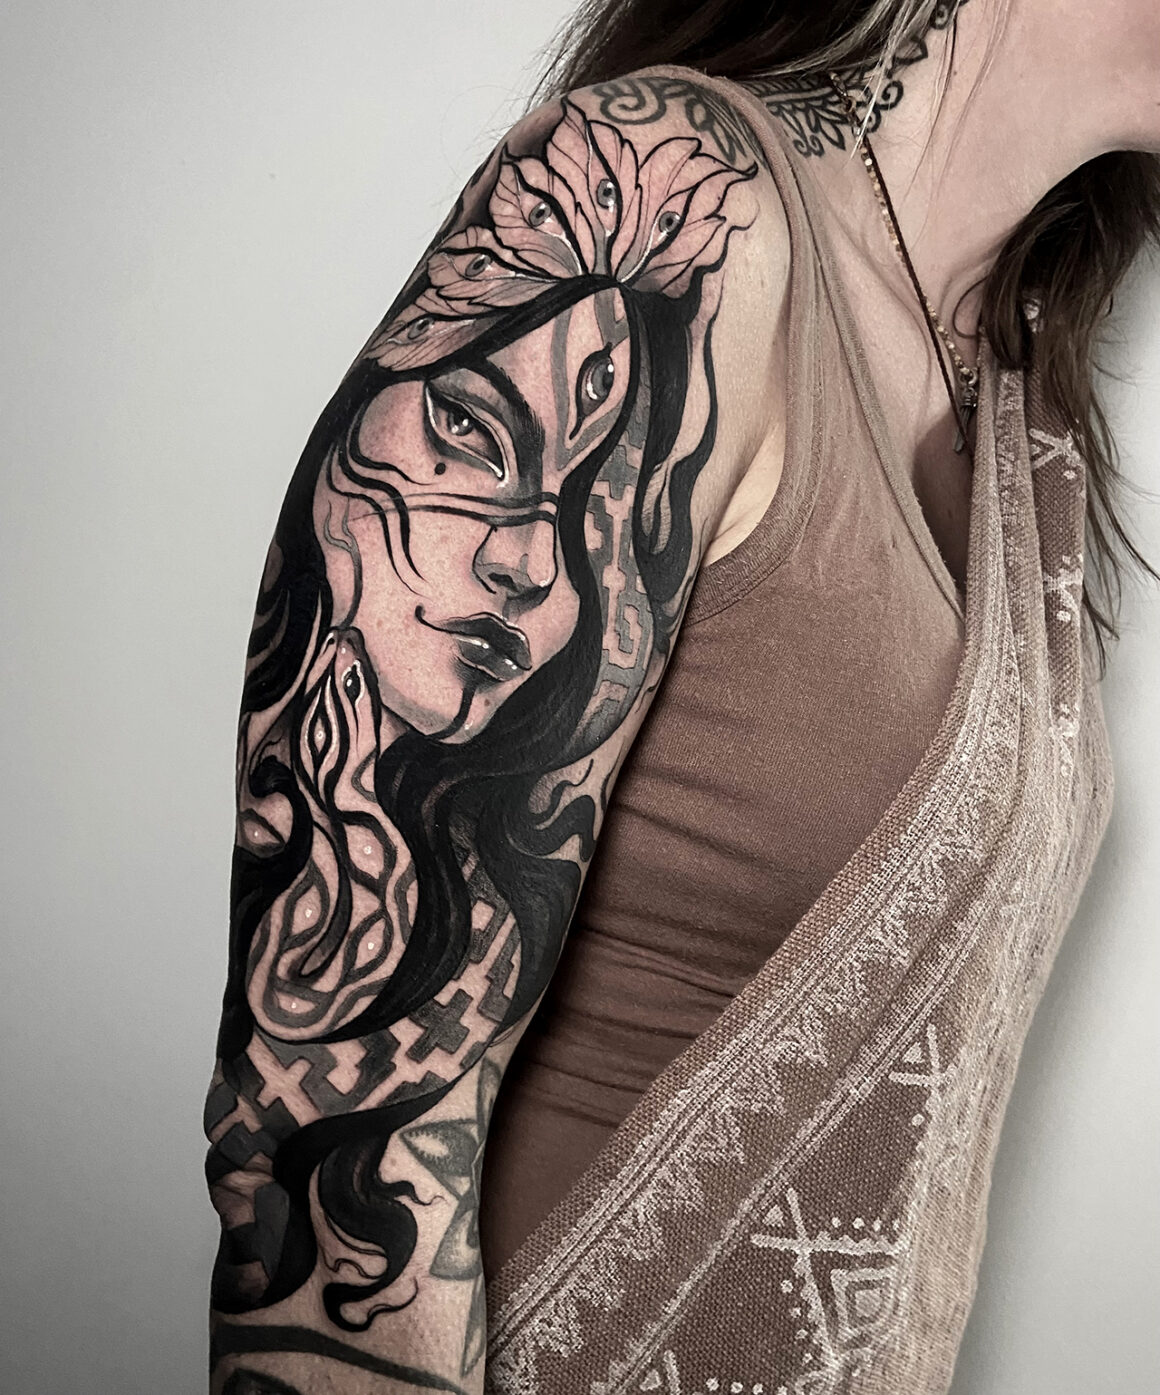 Tattoo by Lorena Morato @lore.morato, Golden Times Atelier @goldentimesatelier